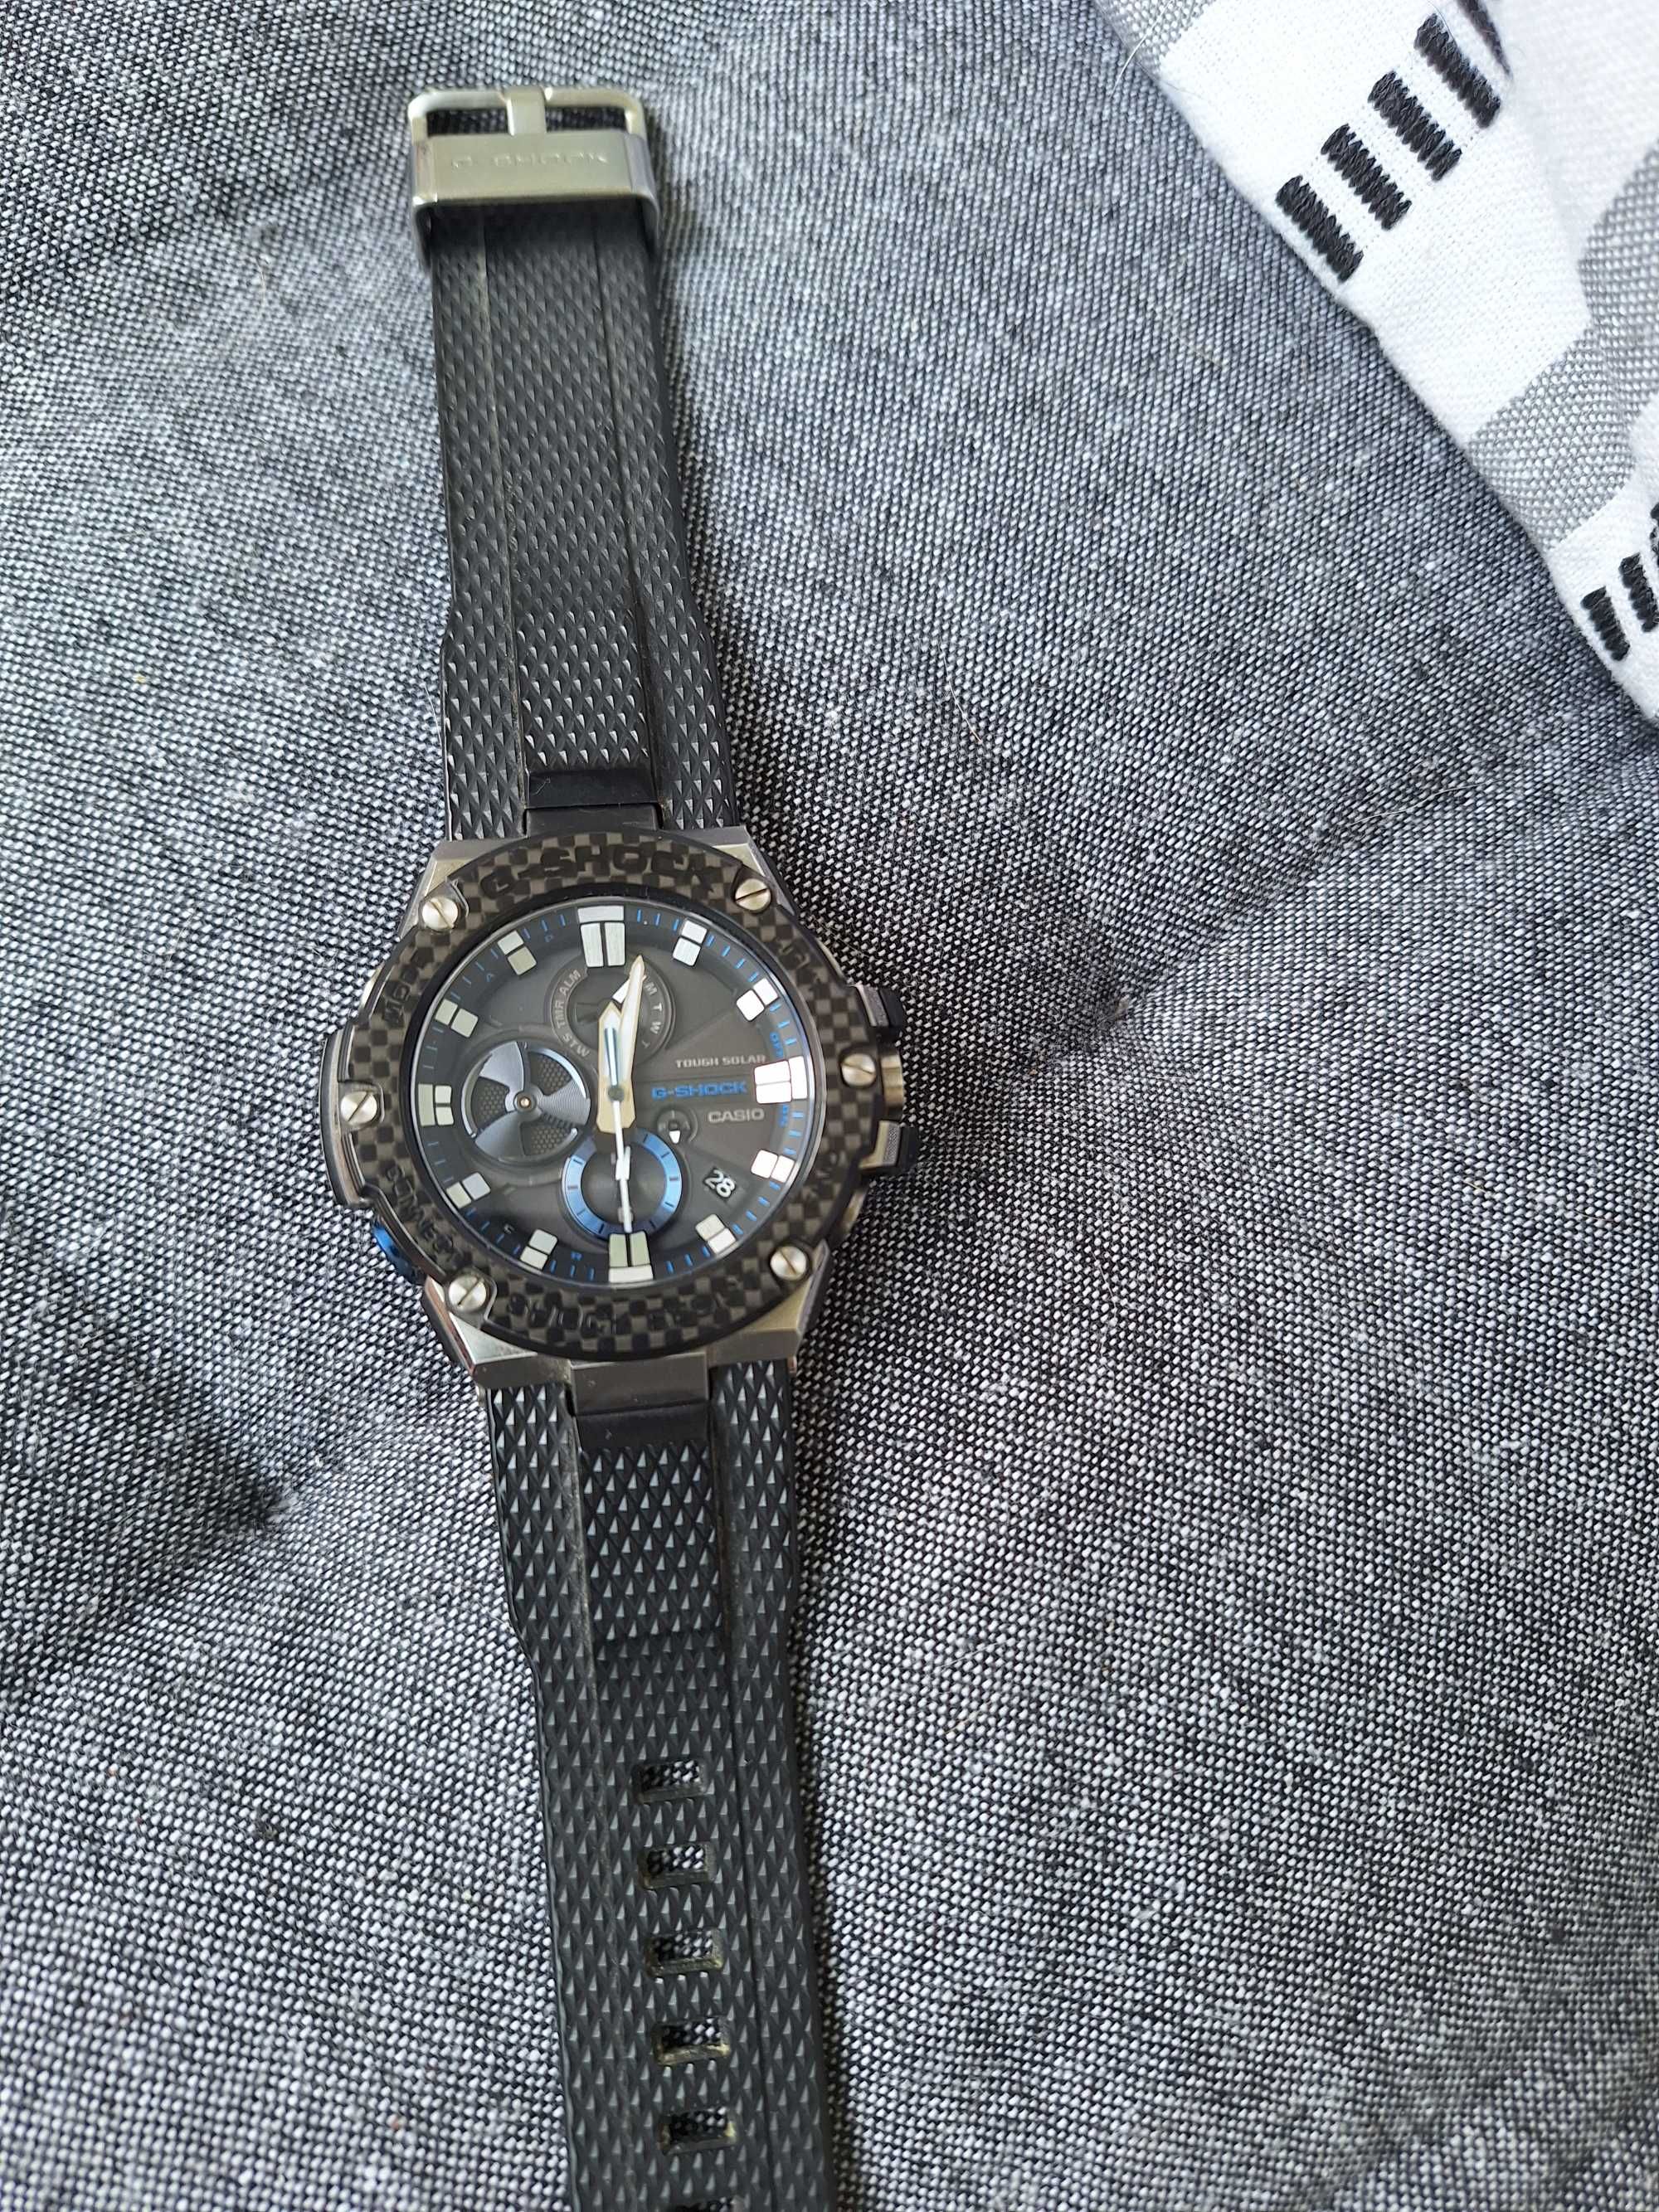 Casio watch  gstB100